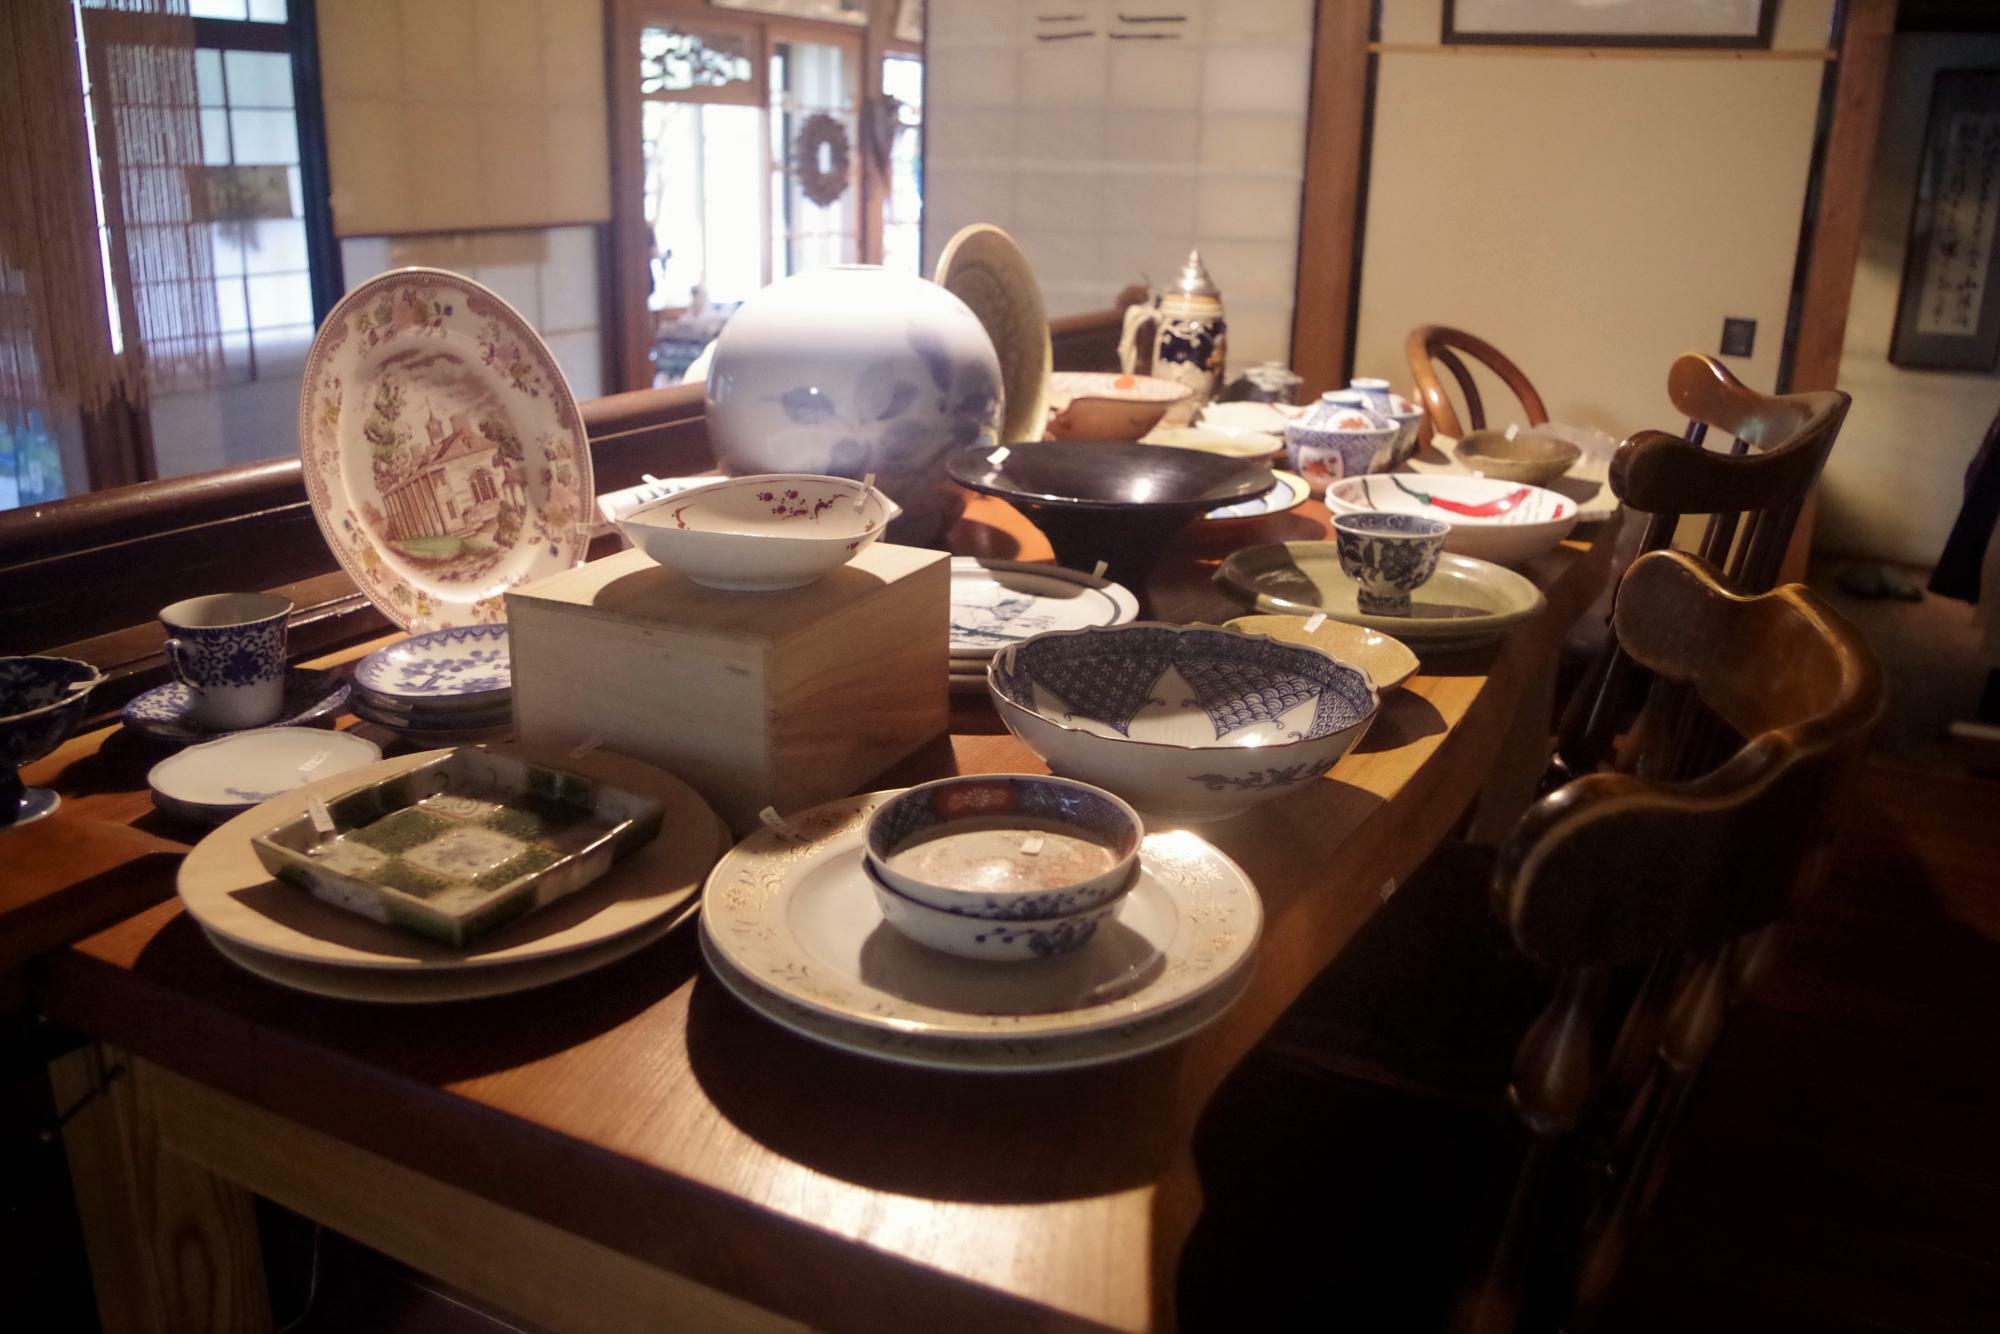 和室にセンス良く展示されている器は、京都にある町屋の雑貨店のよう。掘り出し物が見つかりそう